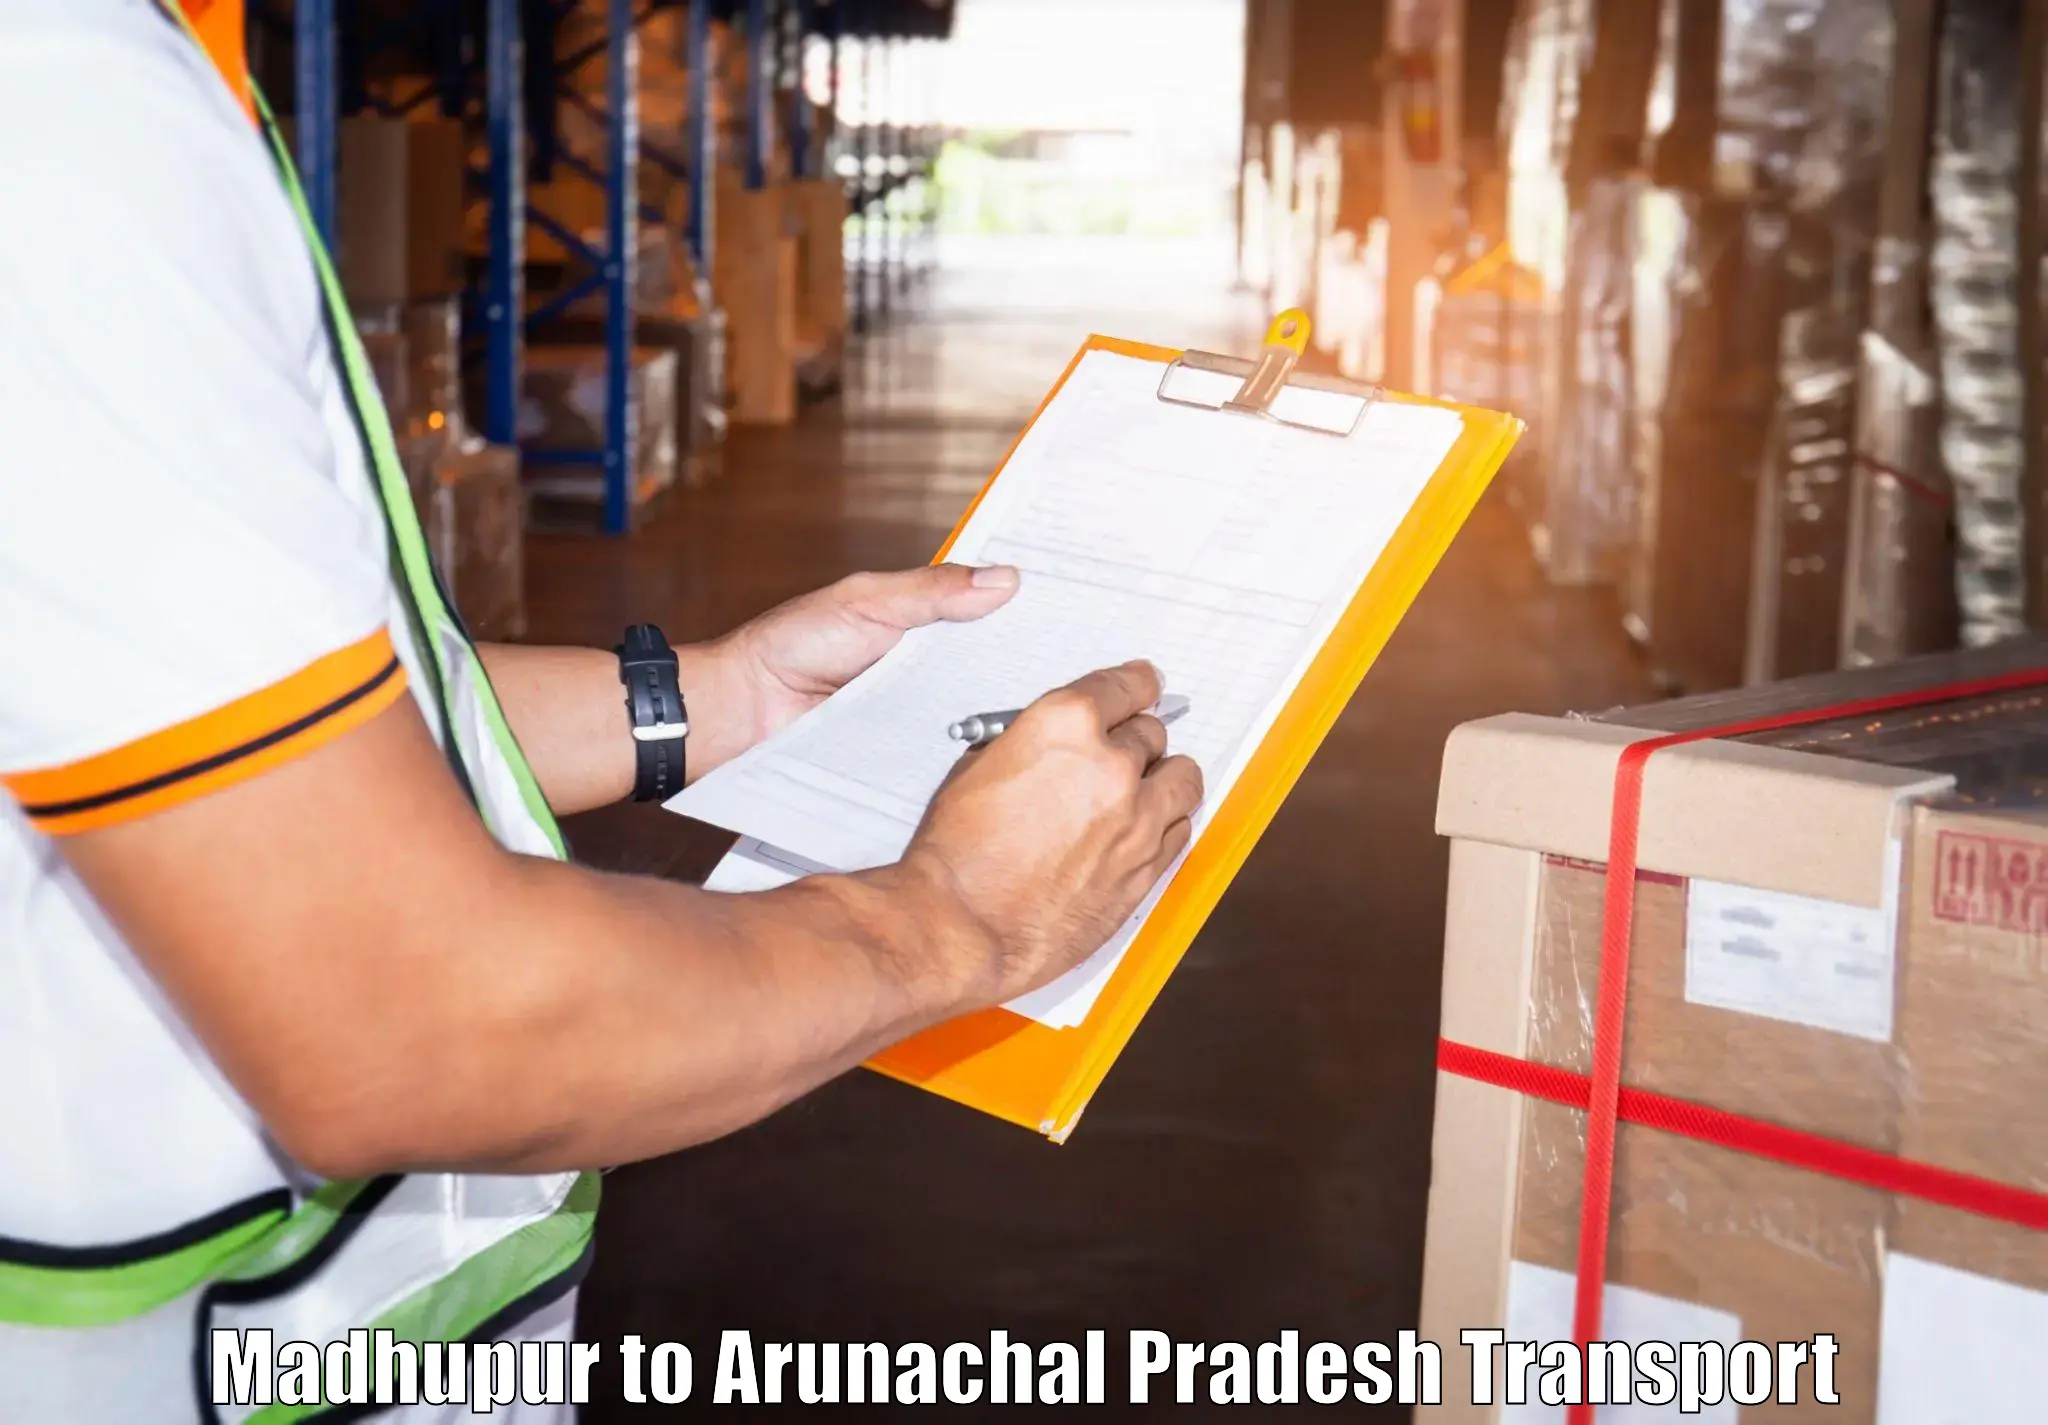 Nearest transport service Madhupur to Arunachal Pradesh